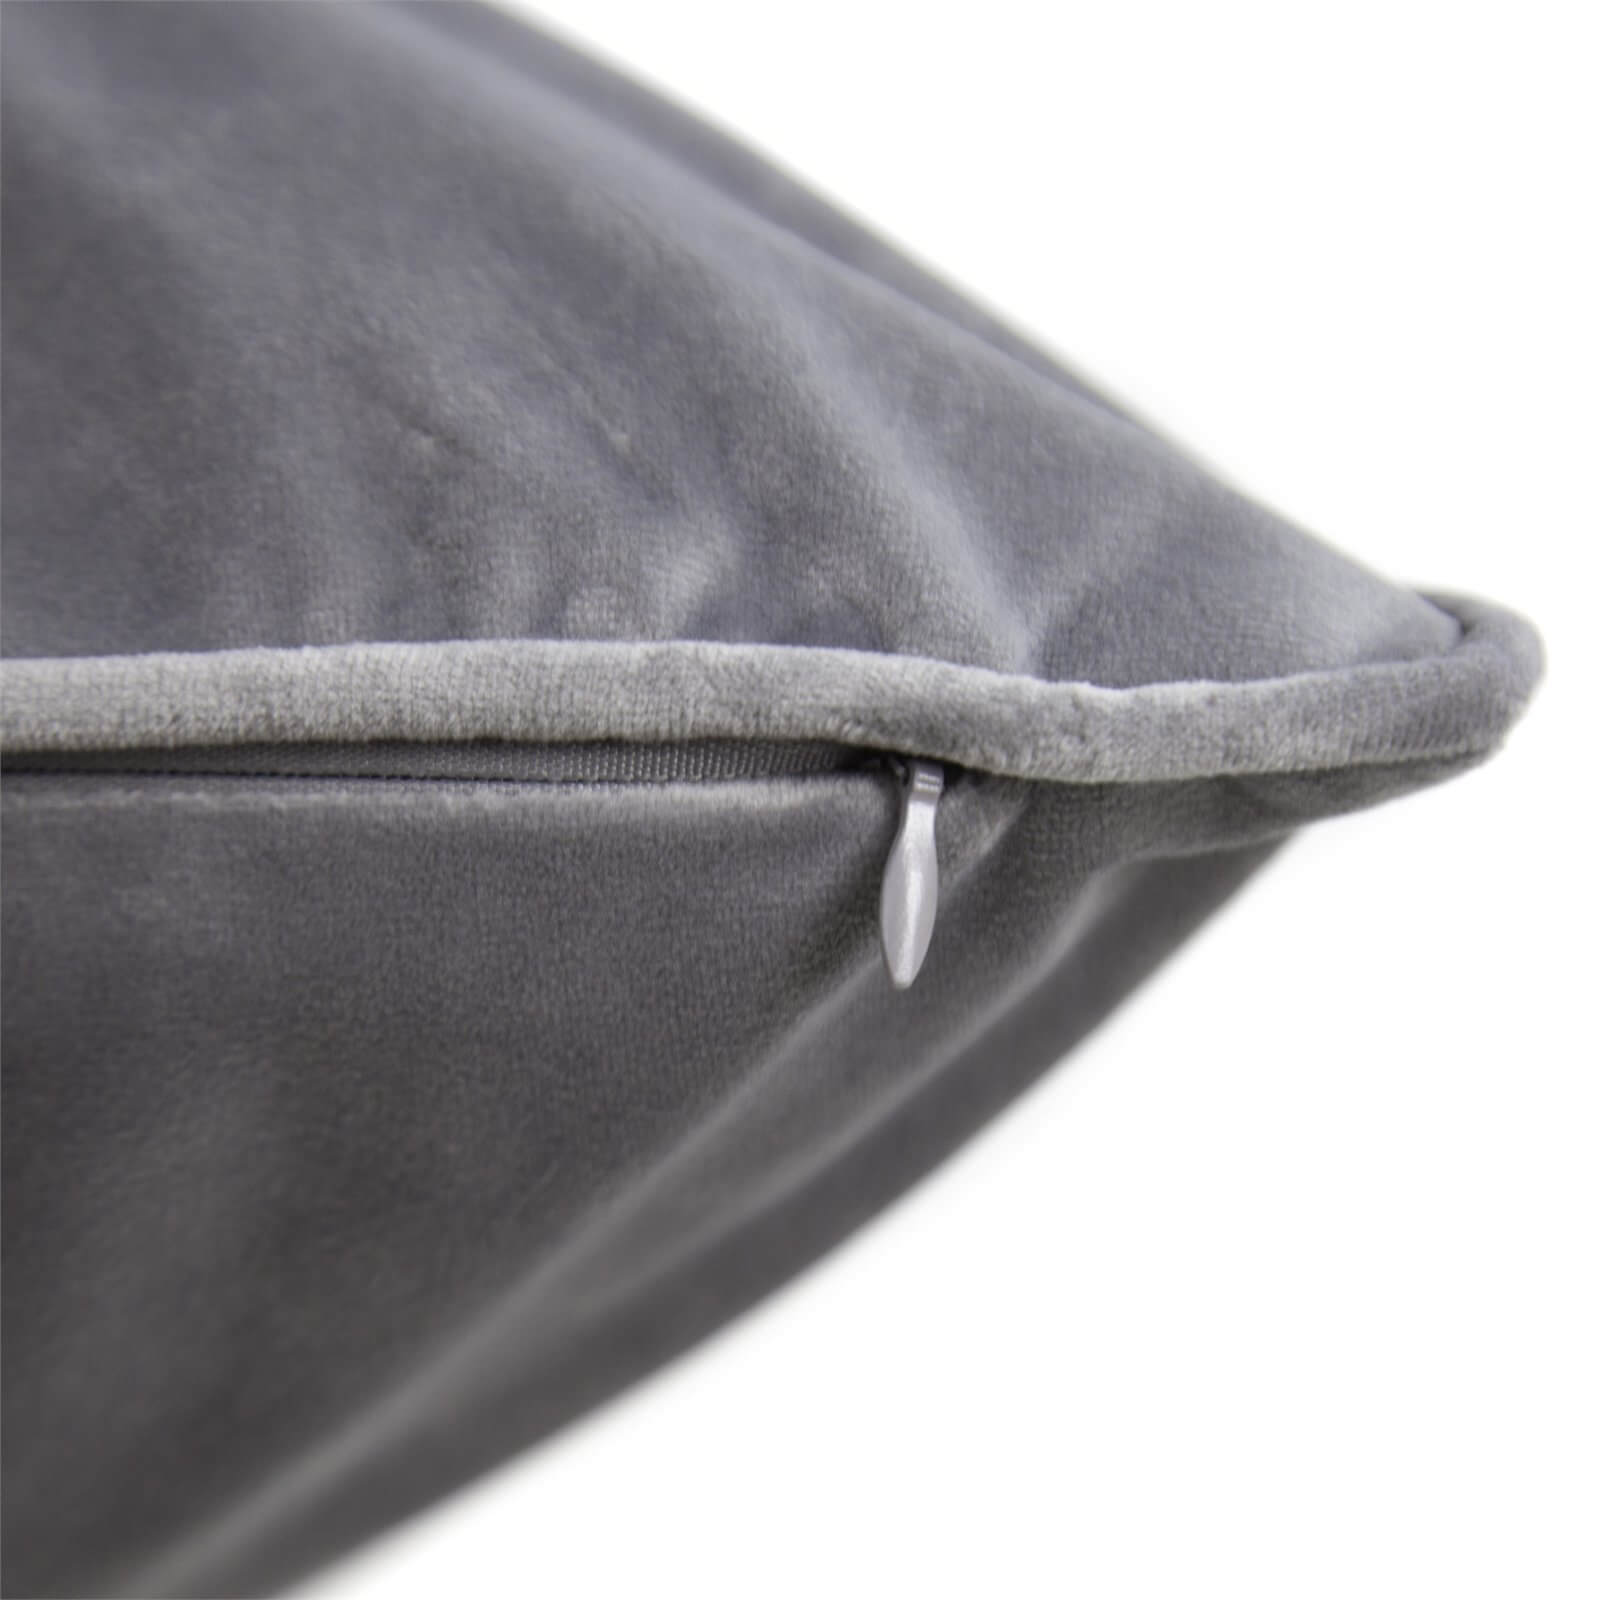 Large Plain Velvet Cushion - Light Grey - 58x58cm